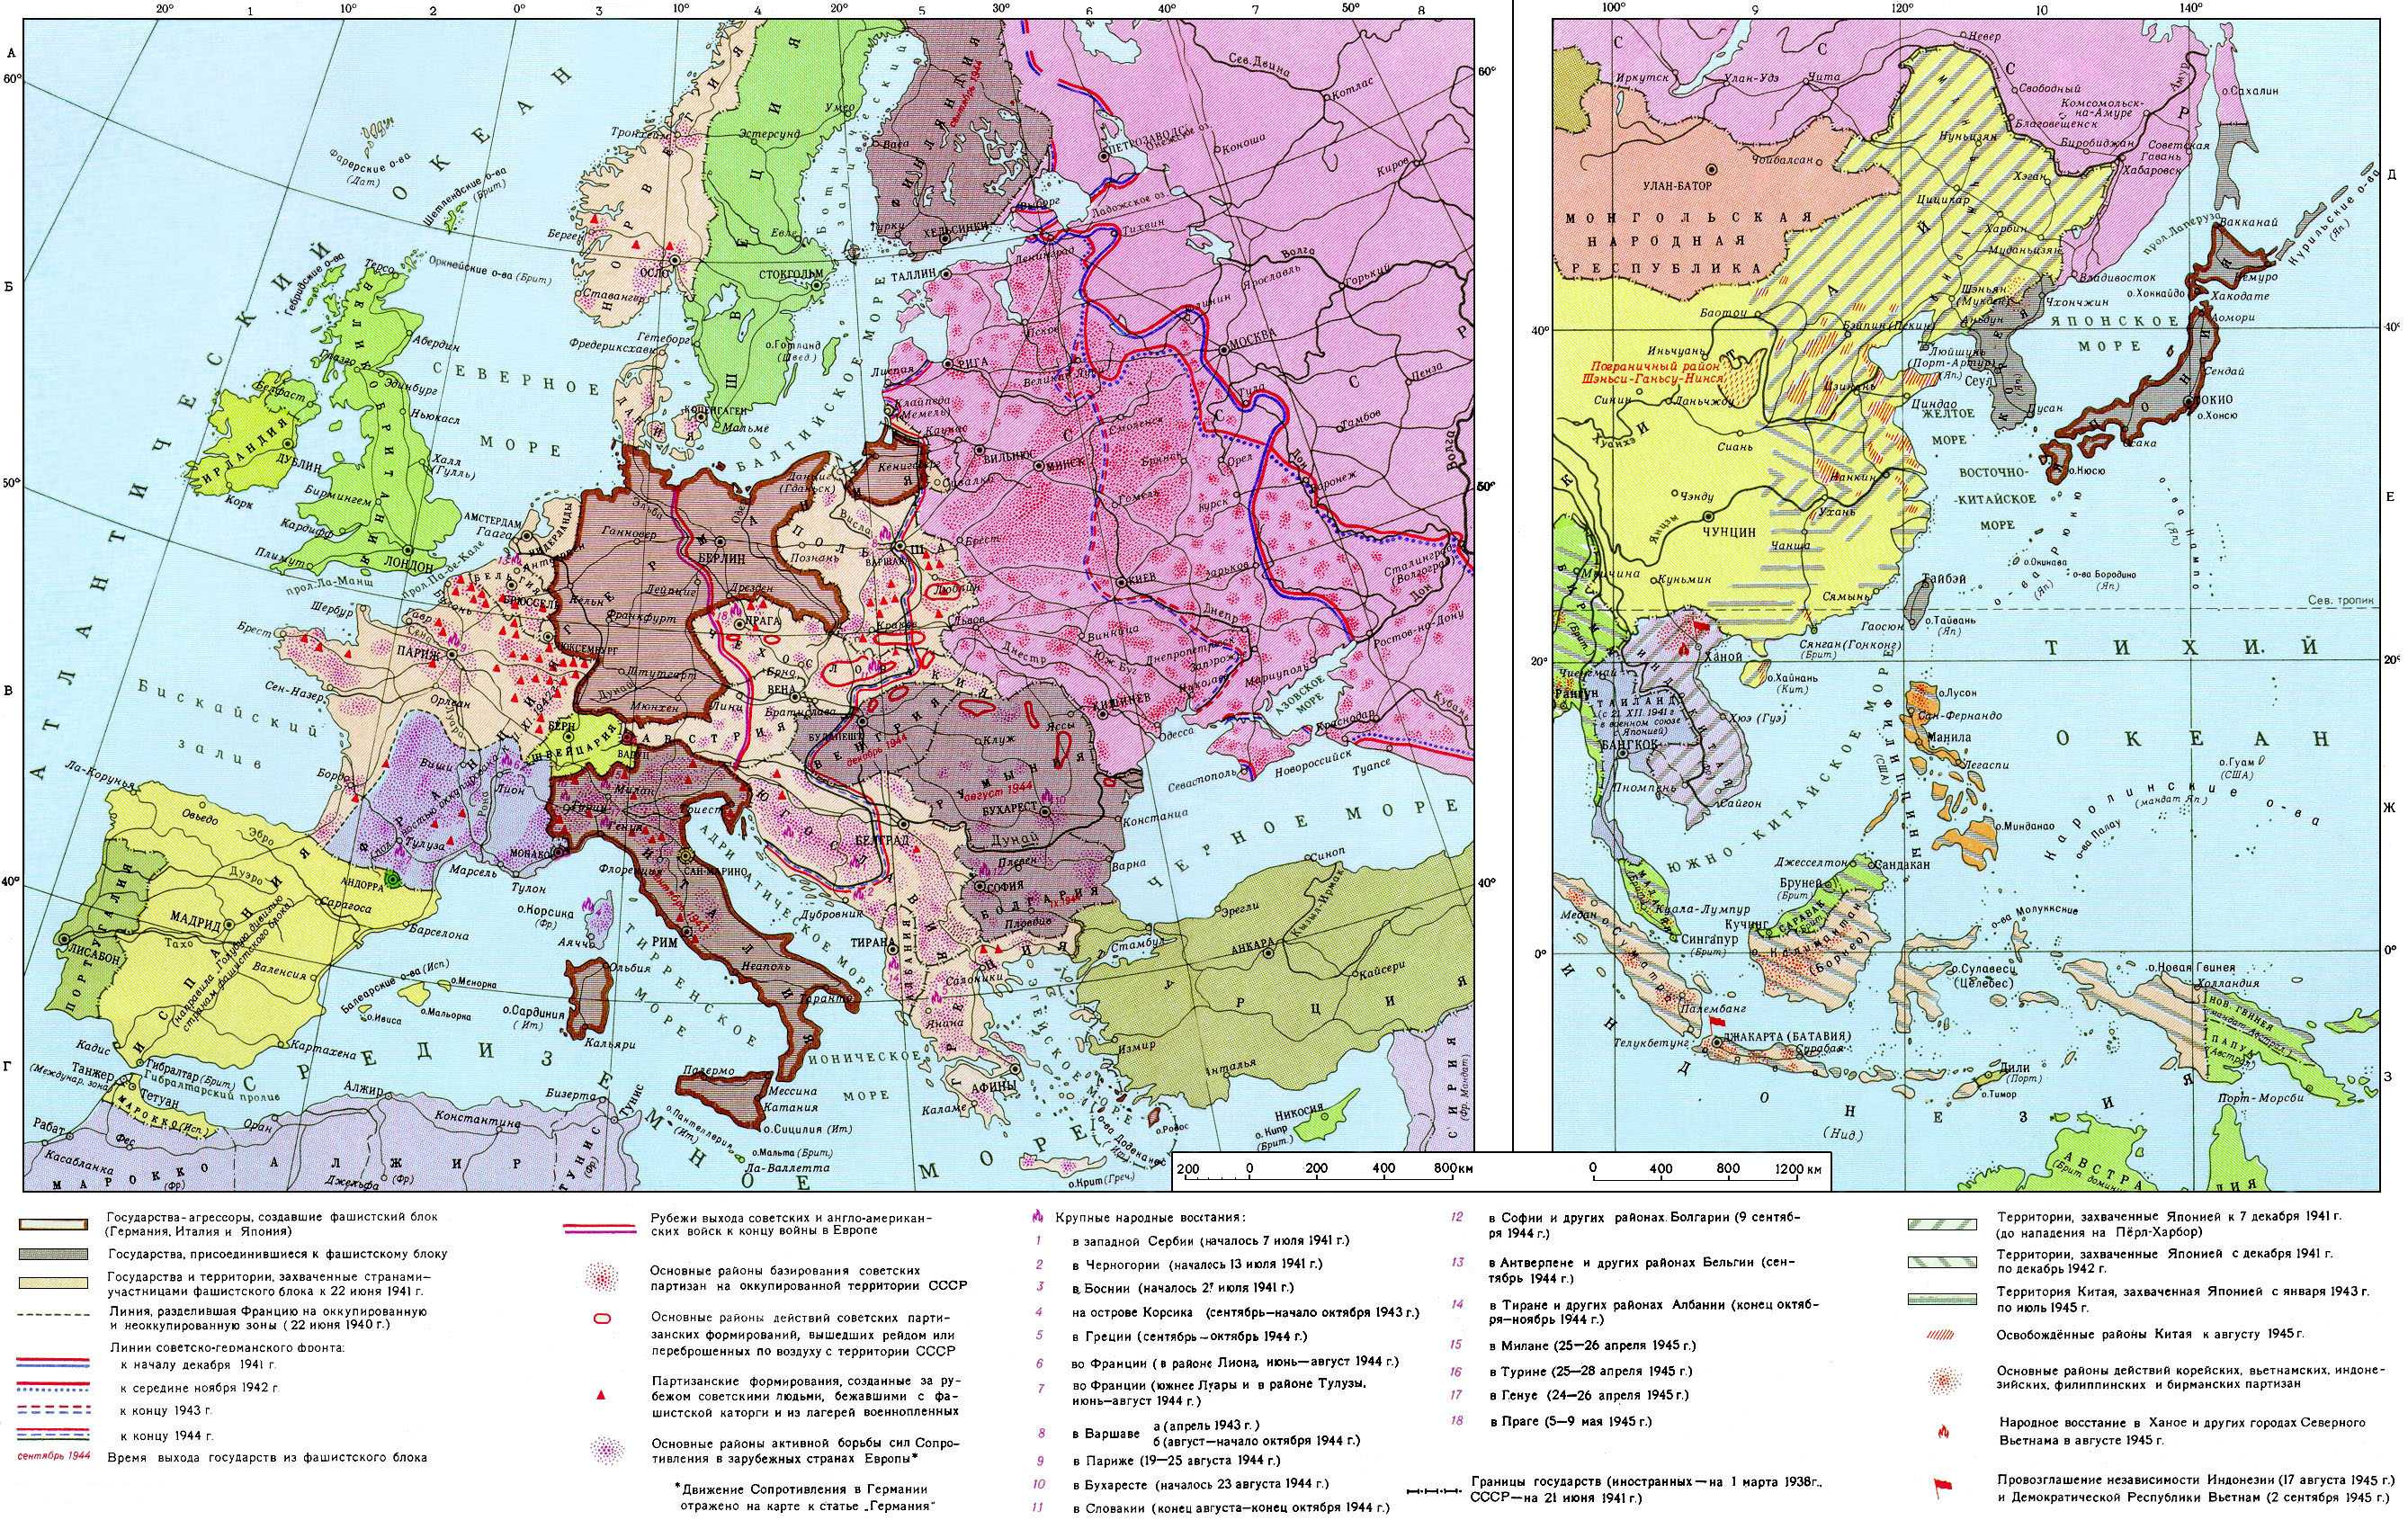 Движение сопротивление в странах европы. Карта Европы после 2 мировой войны. Карта Европы перед 2 мировой войной. Карта Европы до начала второй мировой войны. Карта СССР до второй мировой войны.